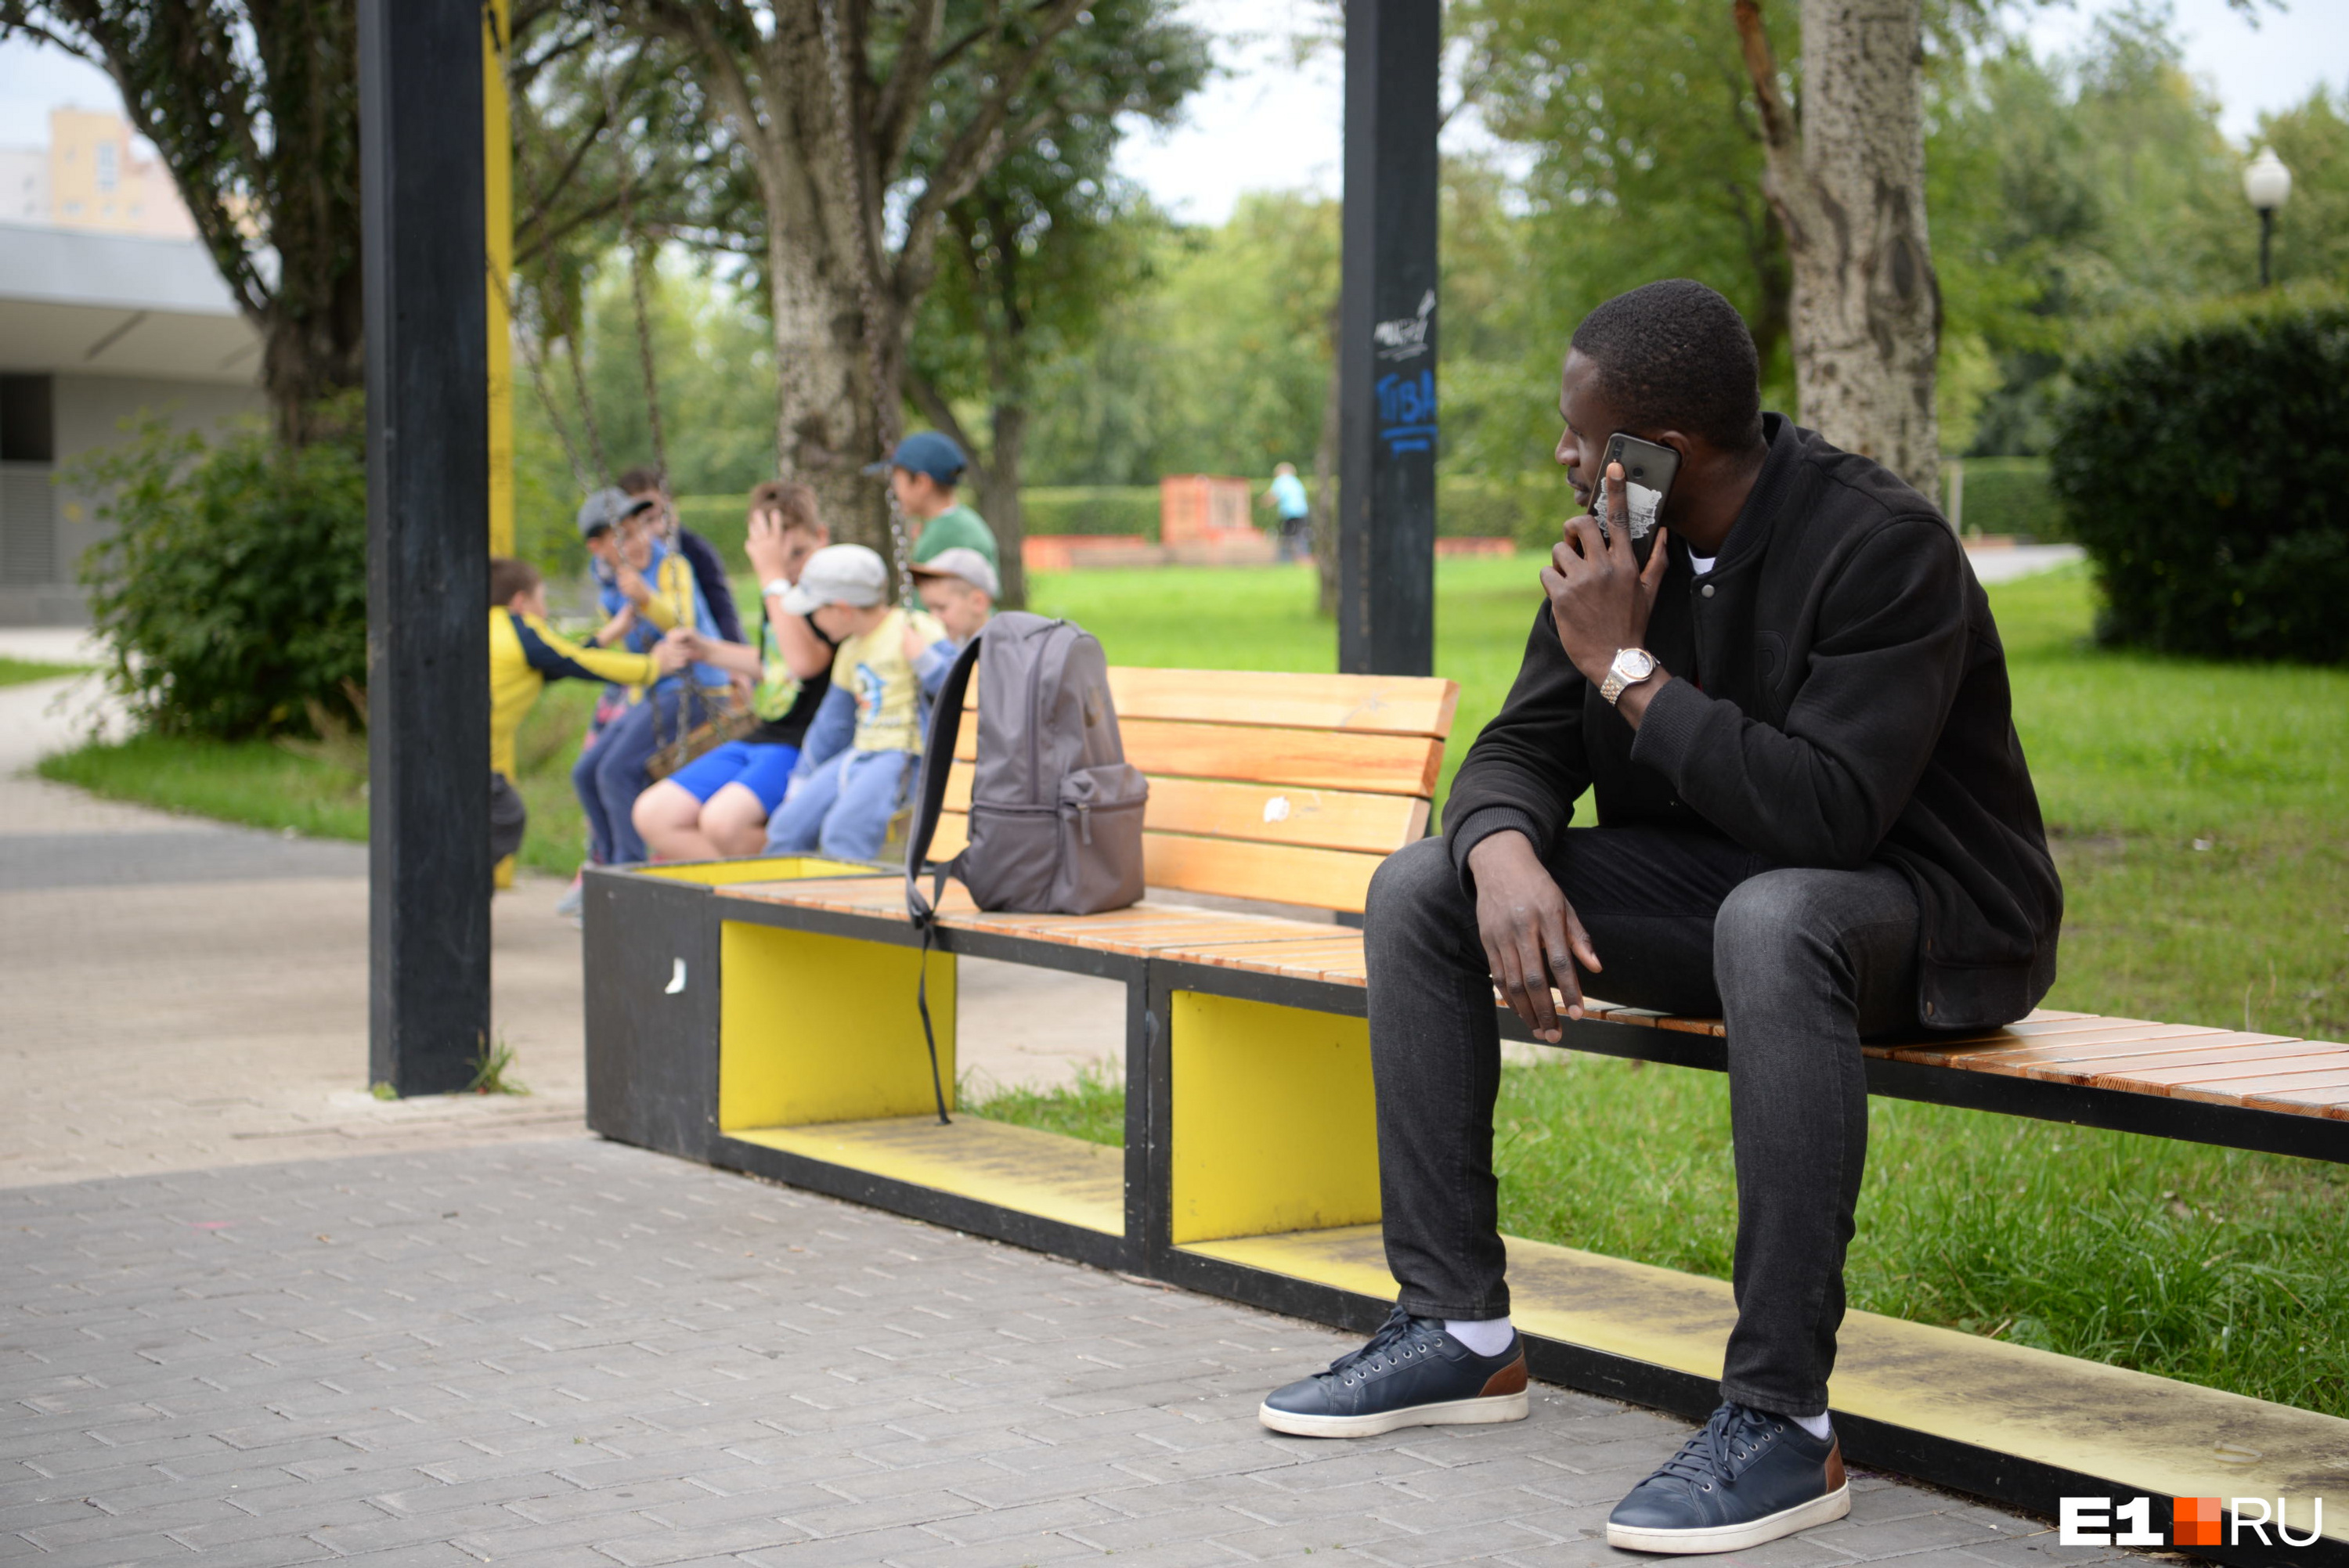 Африканский студент УрГЭУ рассказал о случаях расизма, с которыми он  сталкивался в Екатеринбурге. 13 августа 2019 года - 13 августа 2019 - e1.ru